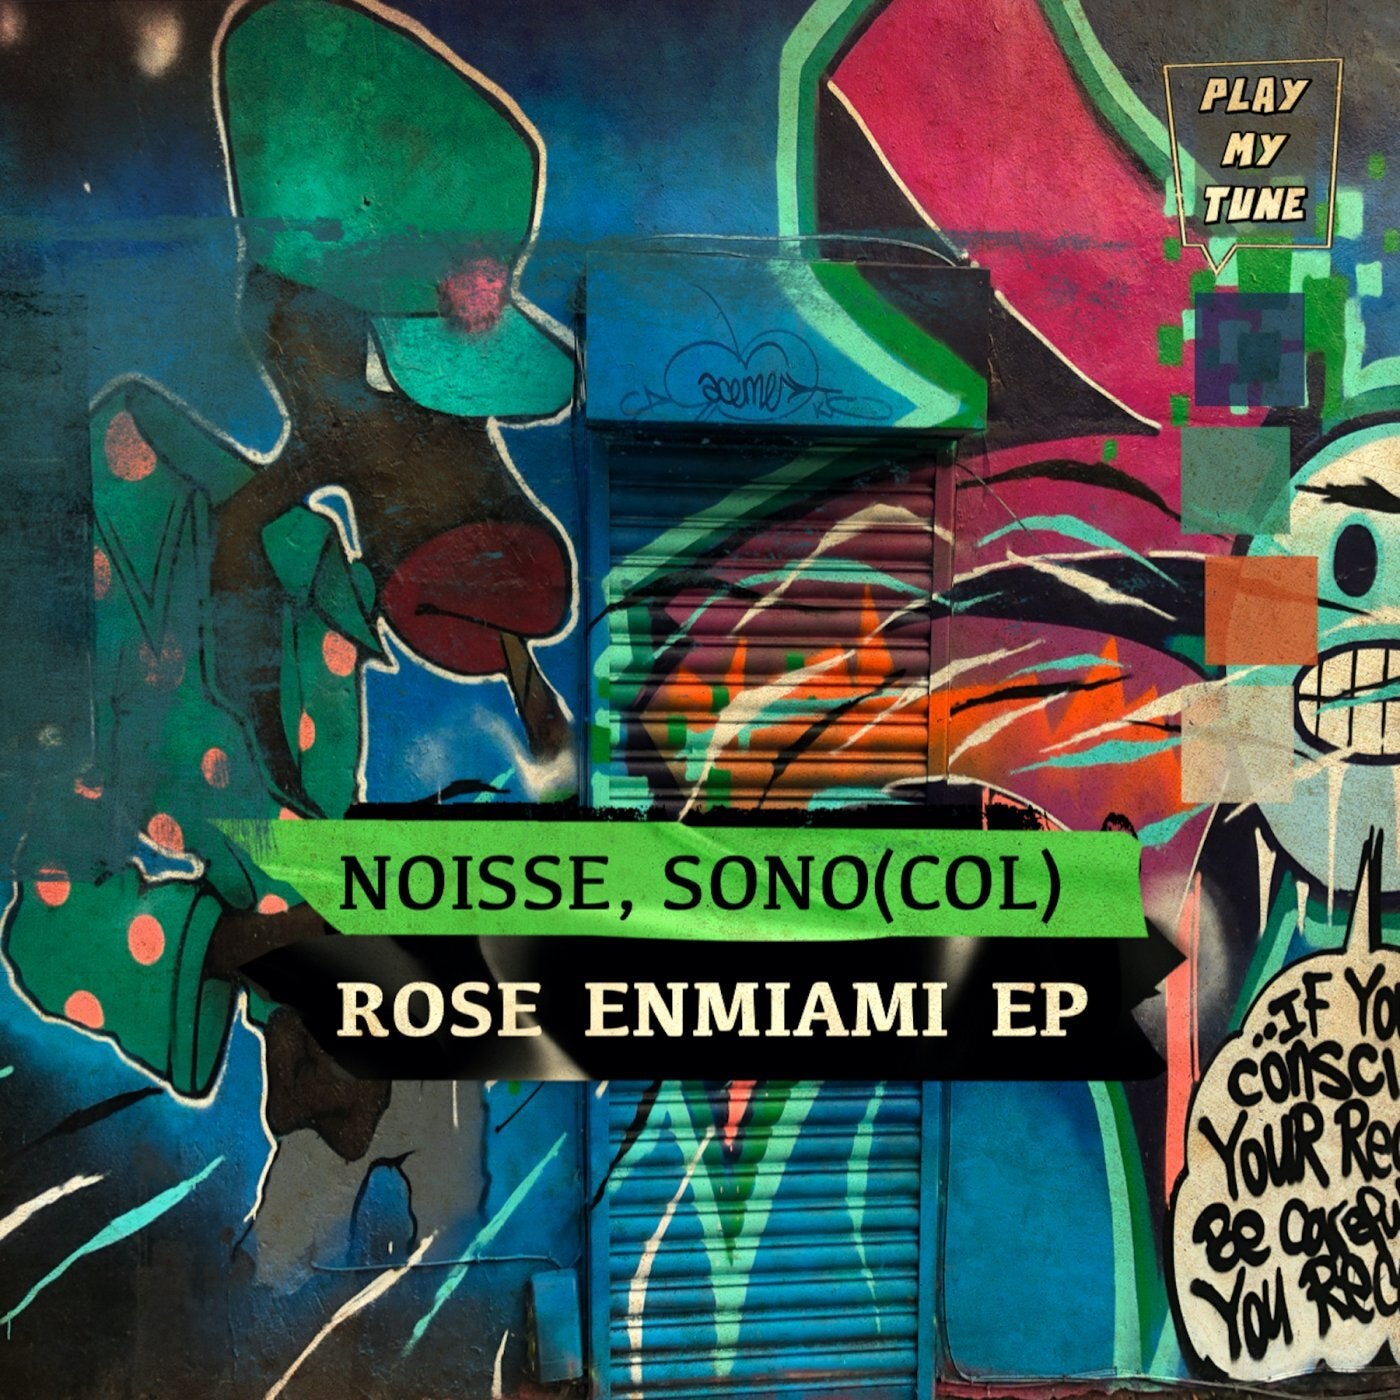 Rose Enmiami EP